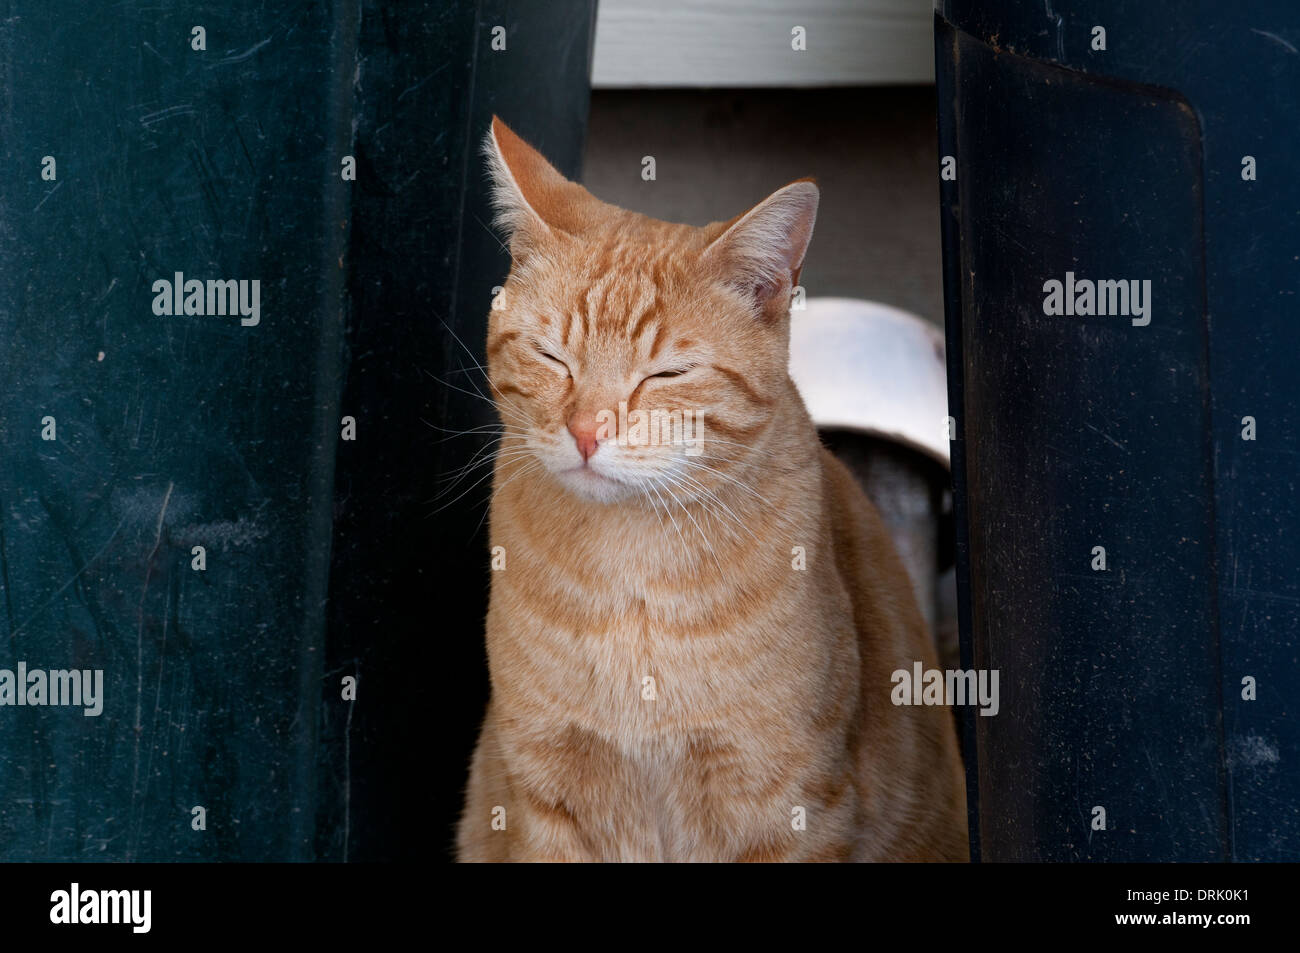 sleepy cat sitting in doorway Stock Photo